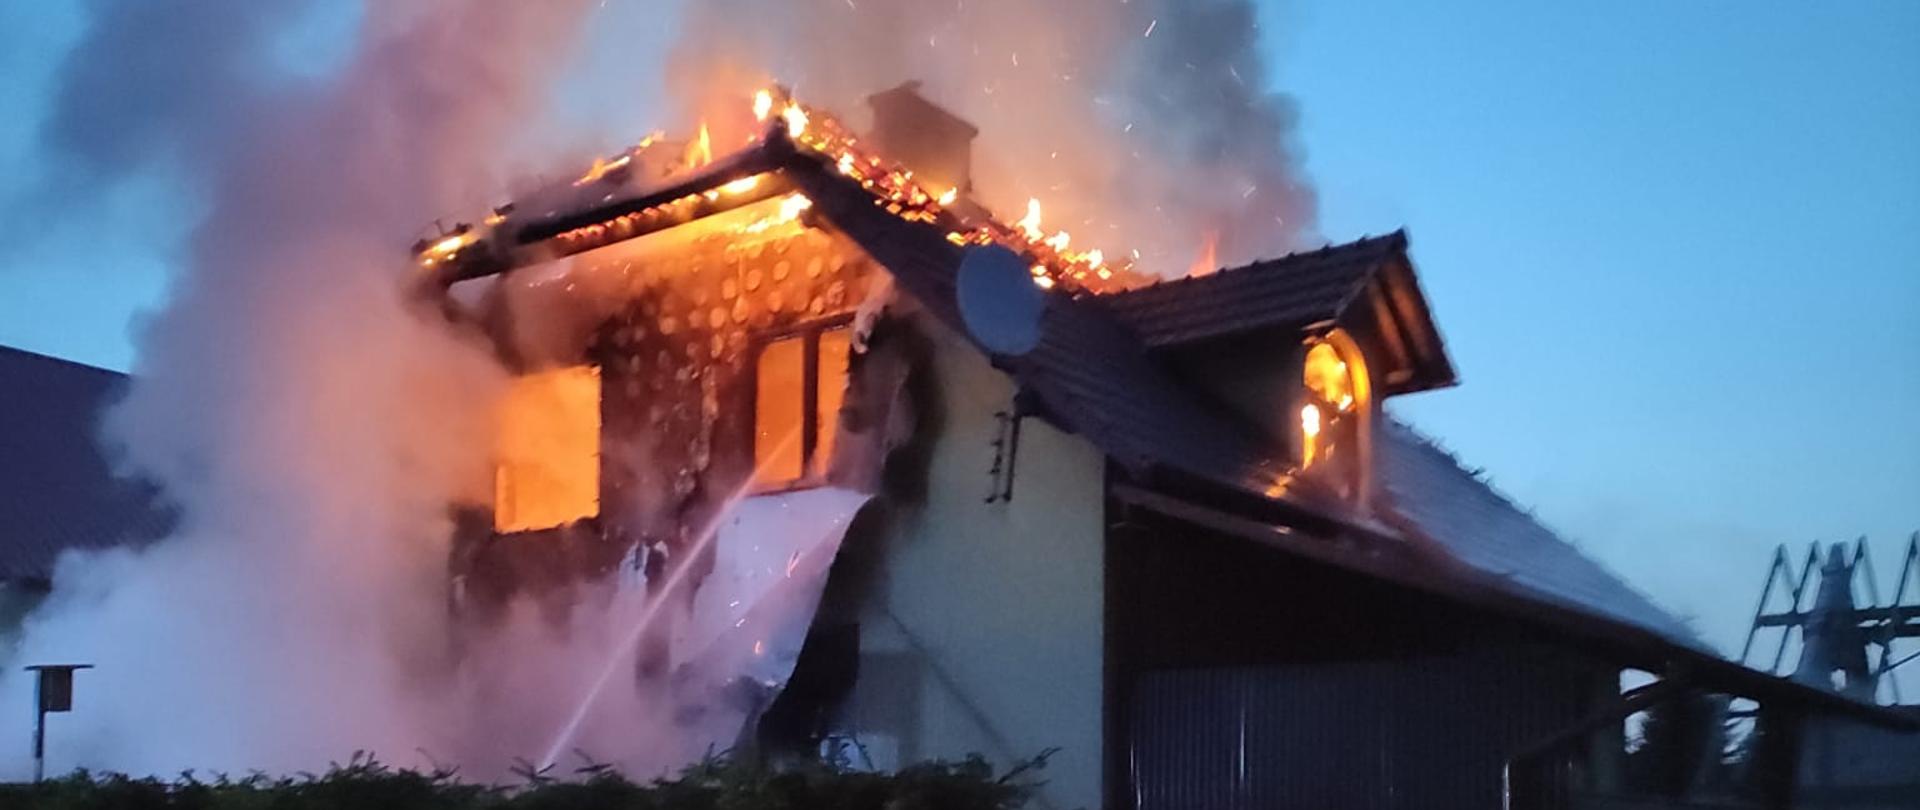 Na zdjęciu poddasze budynku mieszkalnego objęte pożarem. Widoczne płomienie wydobywające się z budynku